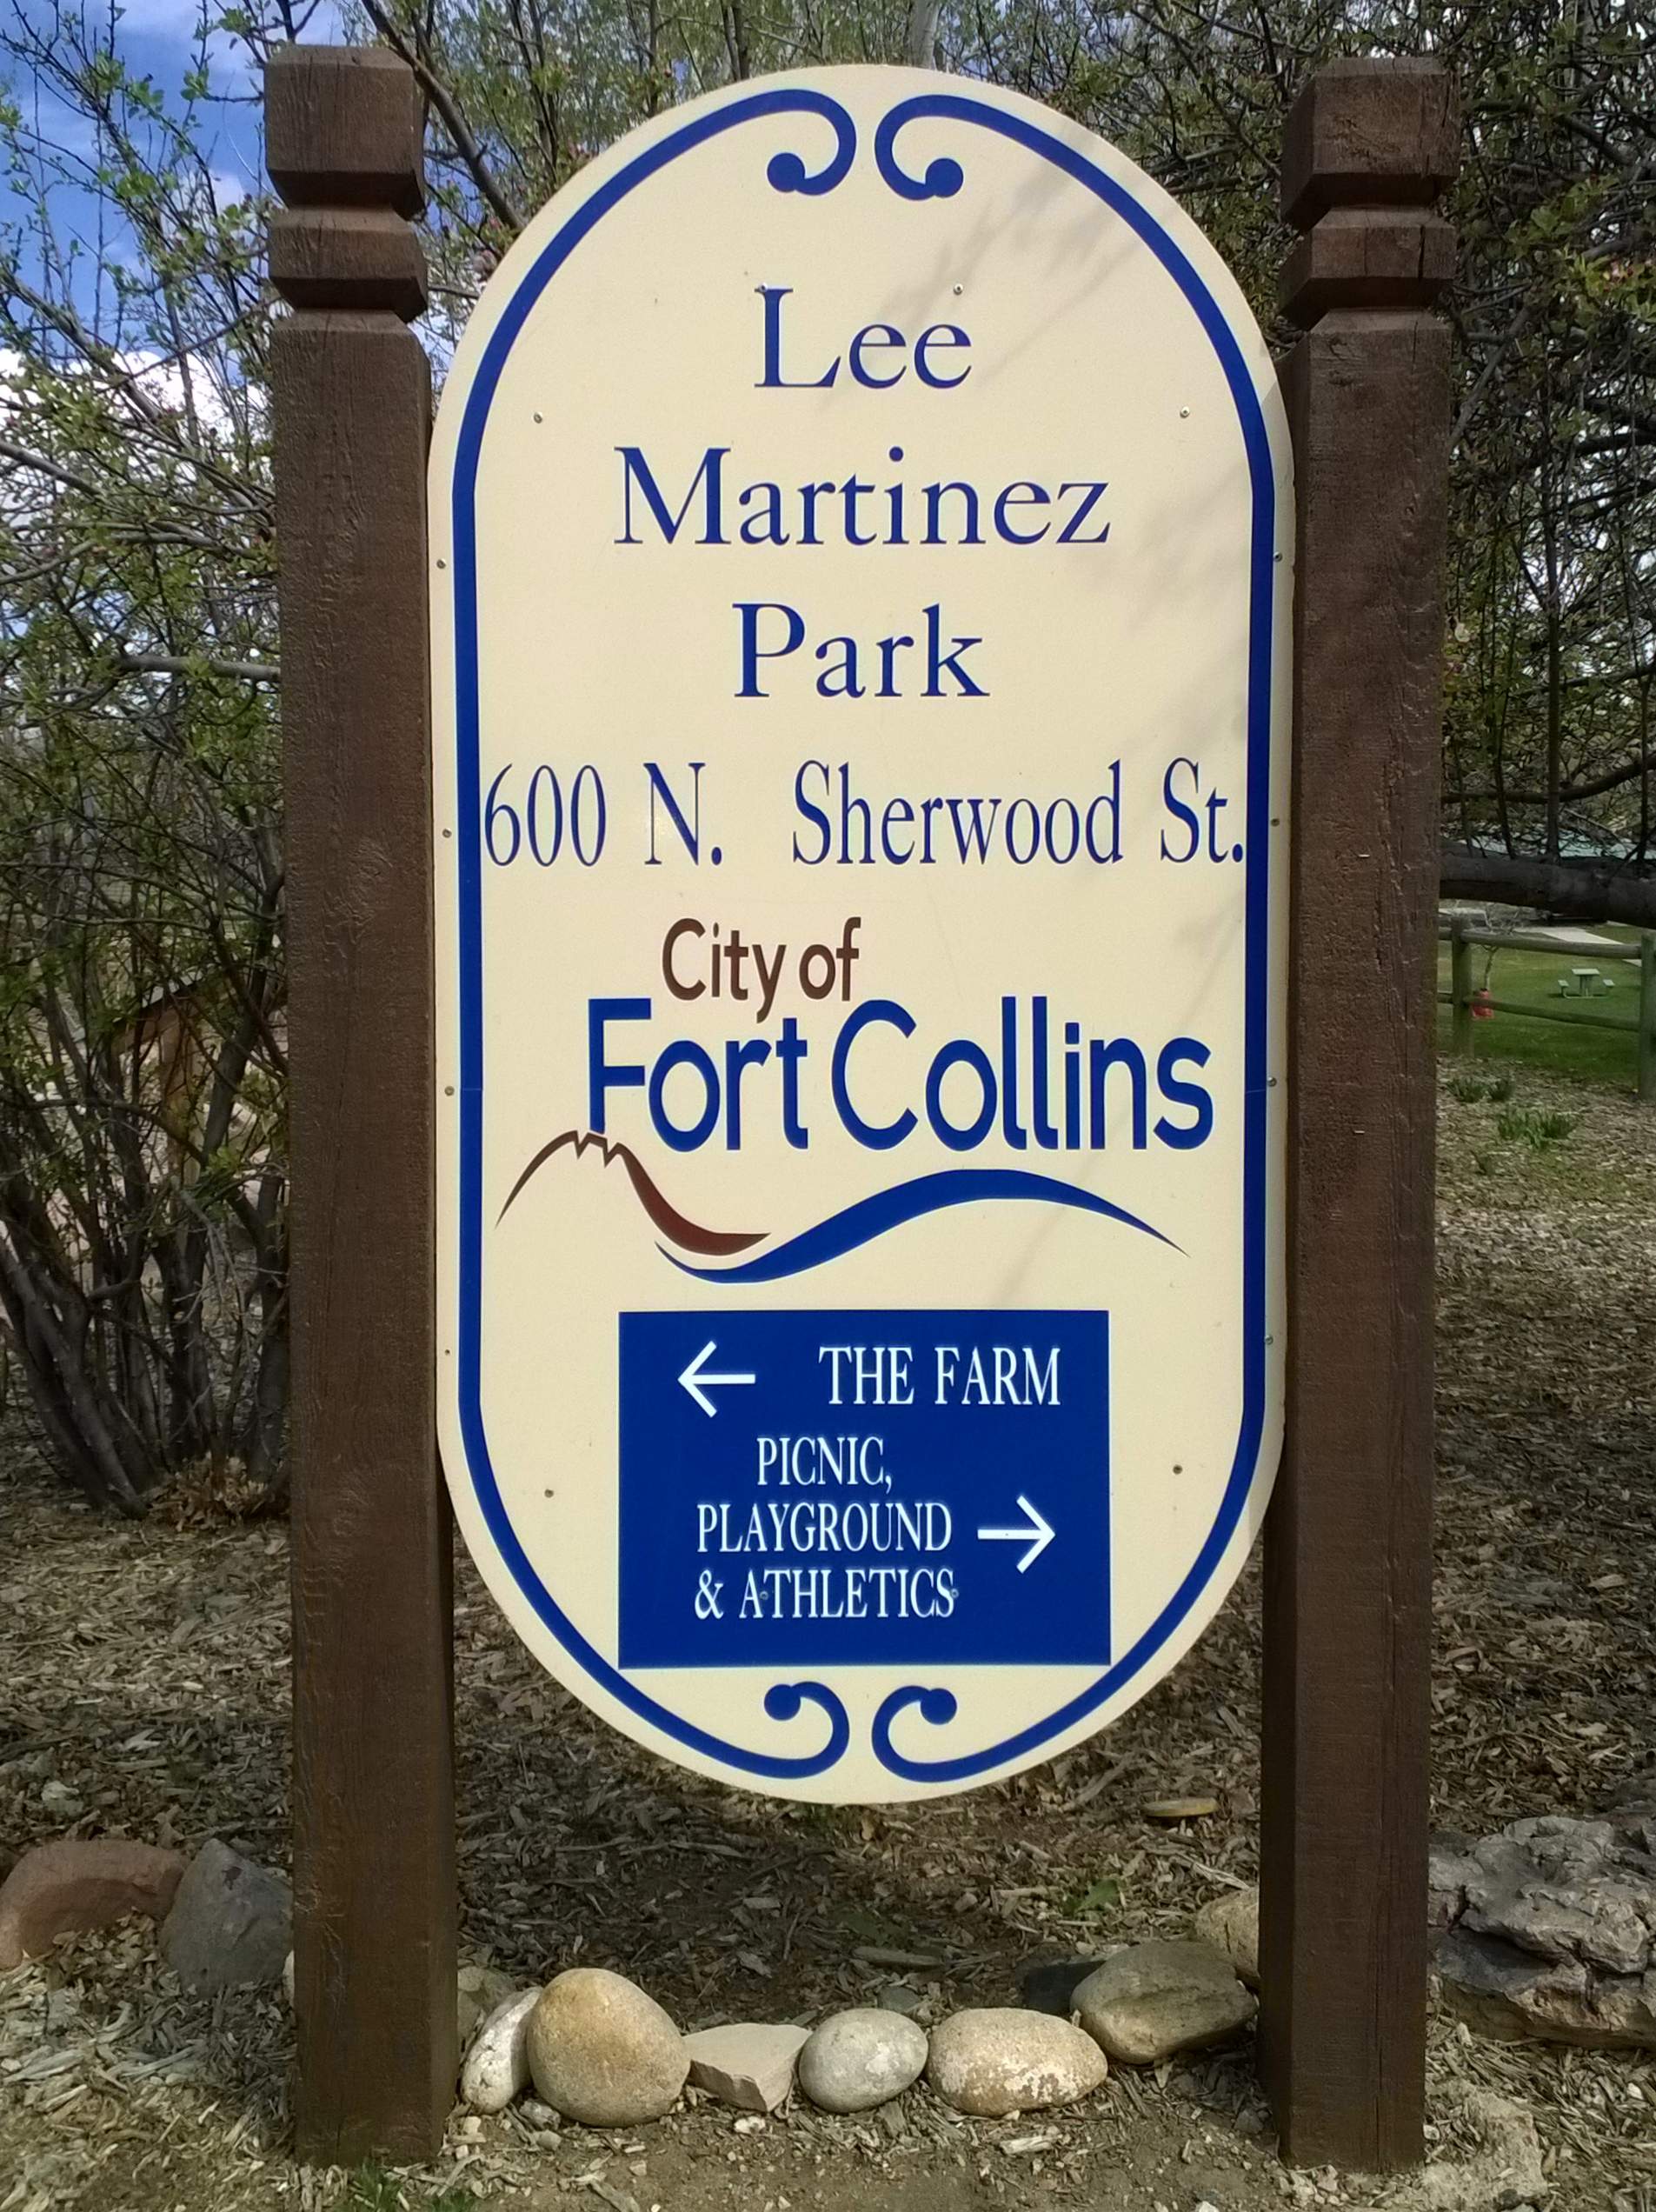 Lee Martinez Park sign, Fort Collins